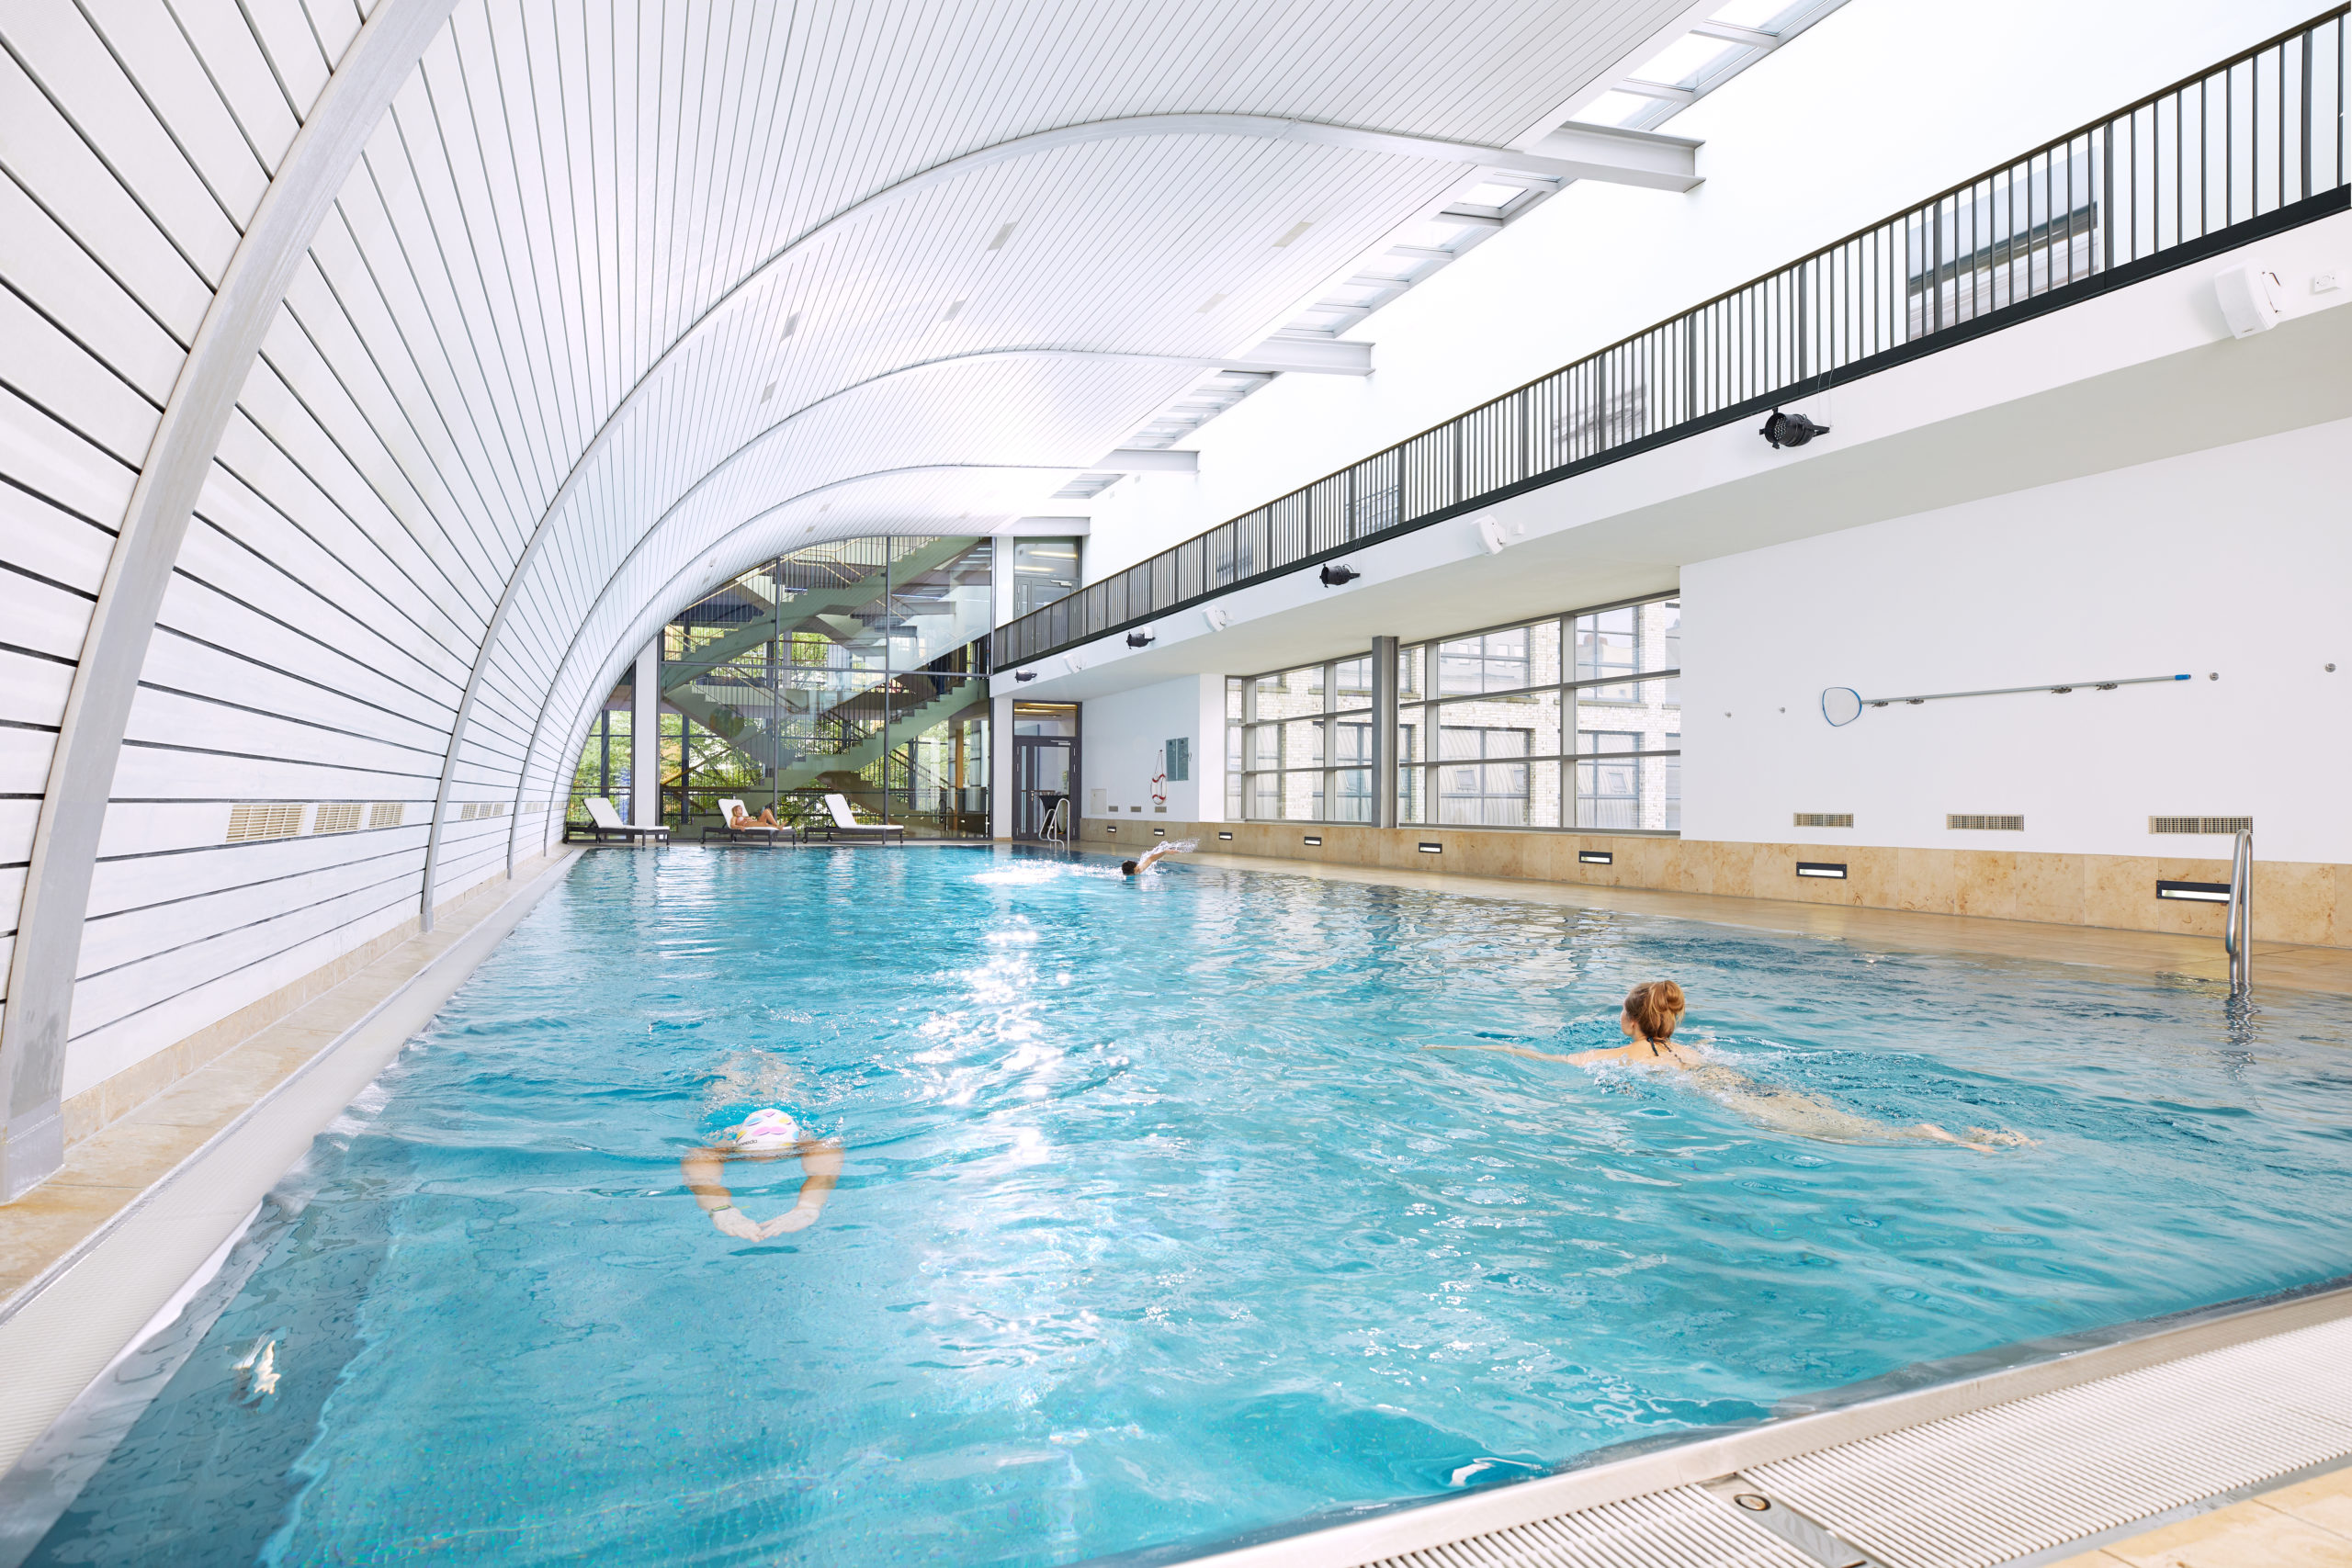 Fitnessstudios in Berlin Bei Aspria am Kurfürstendam springt man nach dem Fitnesstraining in den 25 Meter langen Pool, um die Muskeln wieder zu entspannen.